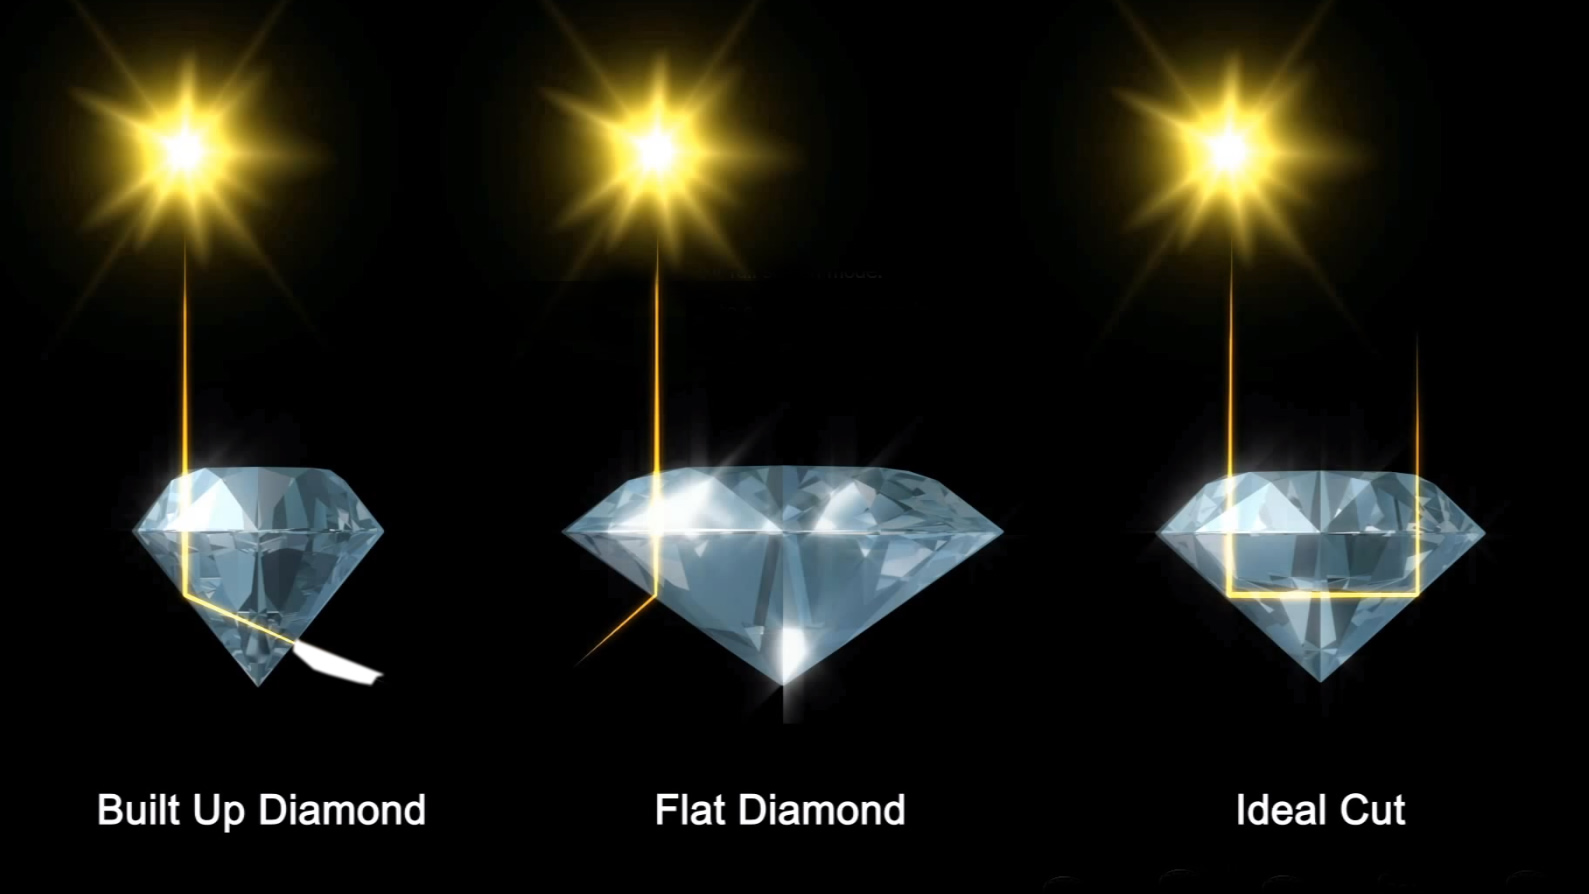 Diamond cut - what is it?